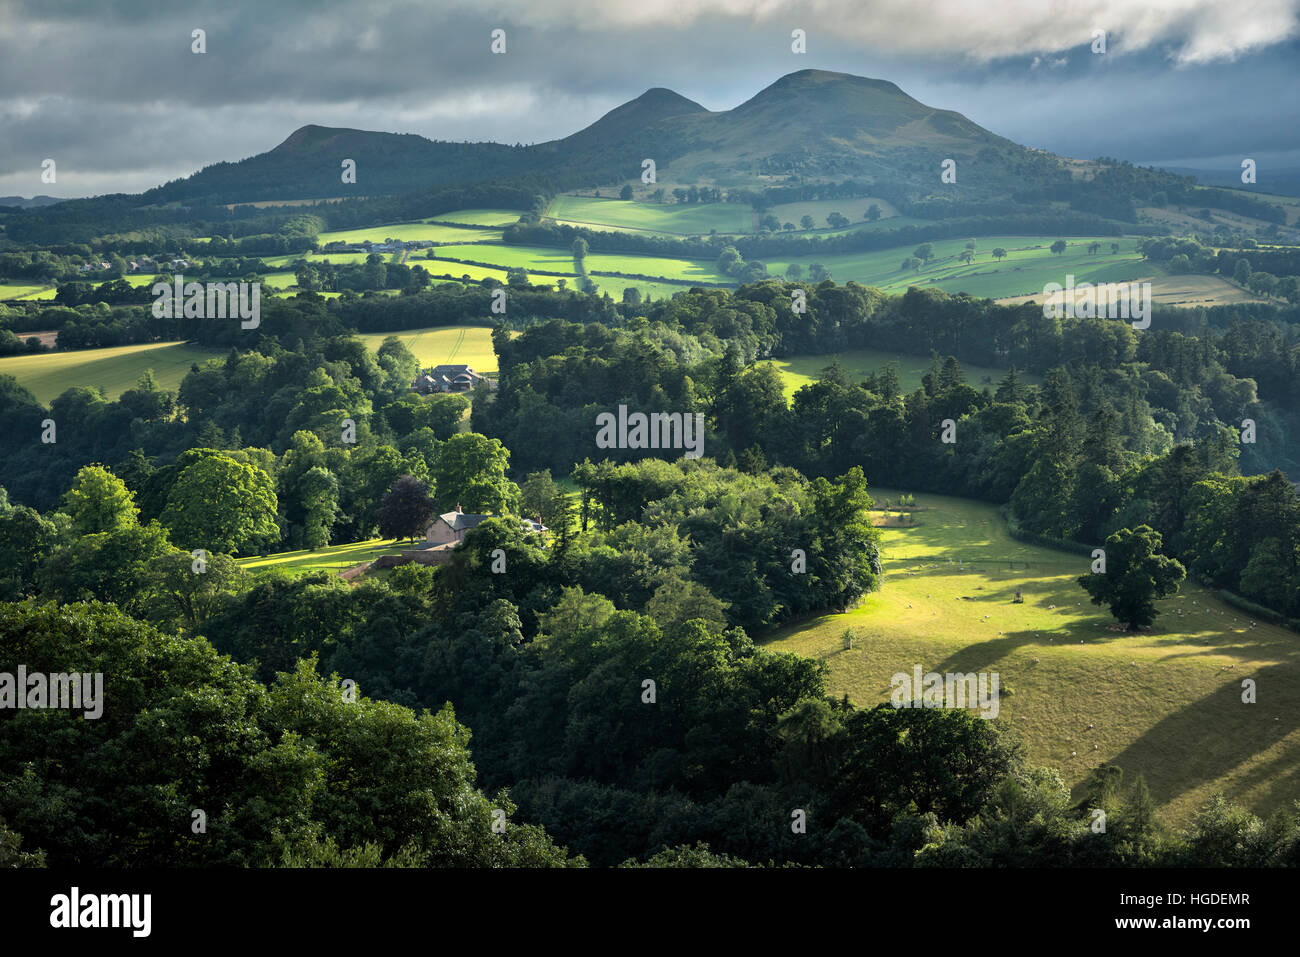 Regno Unito, Scozia, Scott's View è un punto di vista nella, che si affaccia sulla valle del fiume Tweed, che ha fama di essere una delle visualizzazioni preferite di Sir Walter Scott. Foto Stock